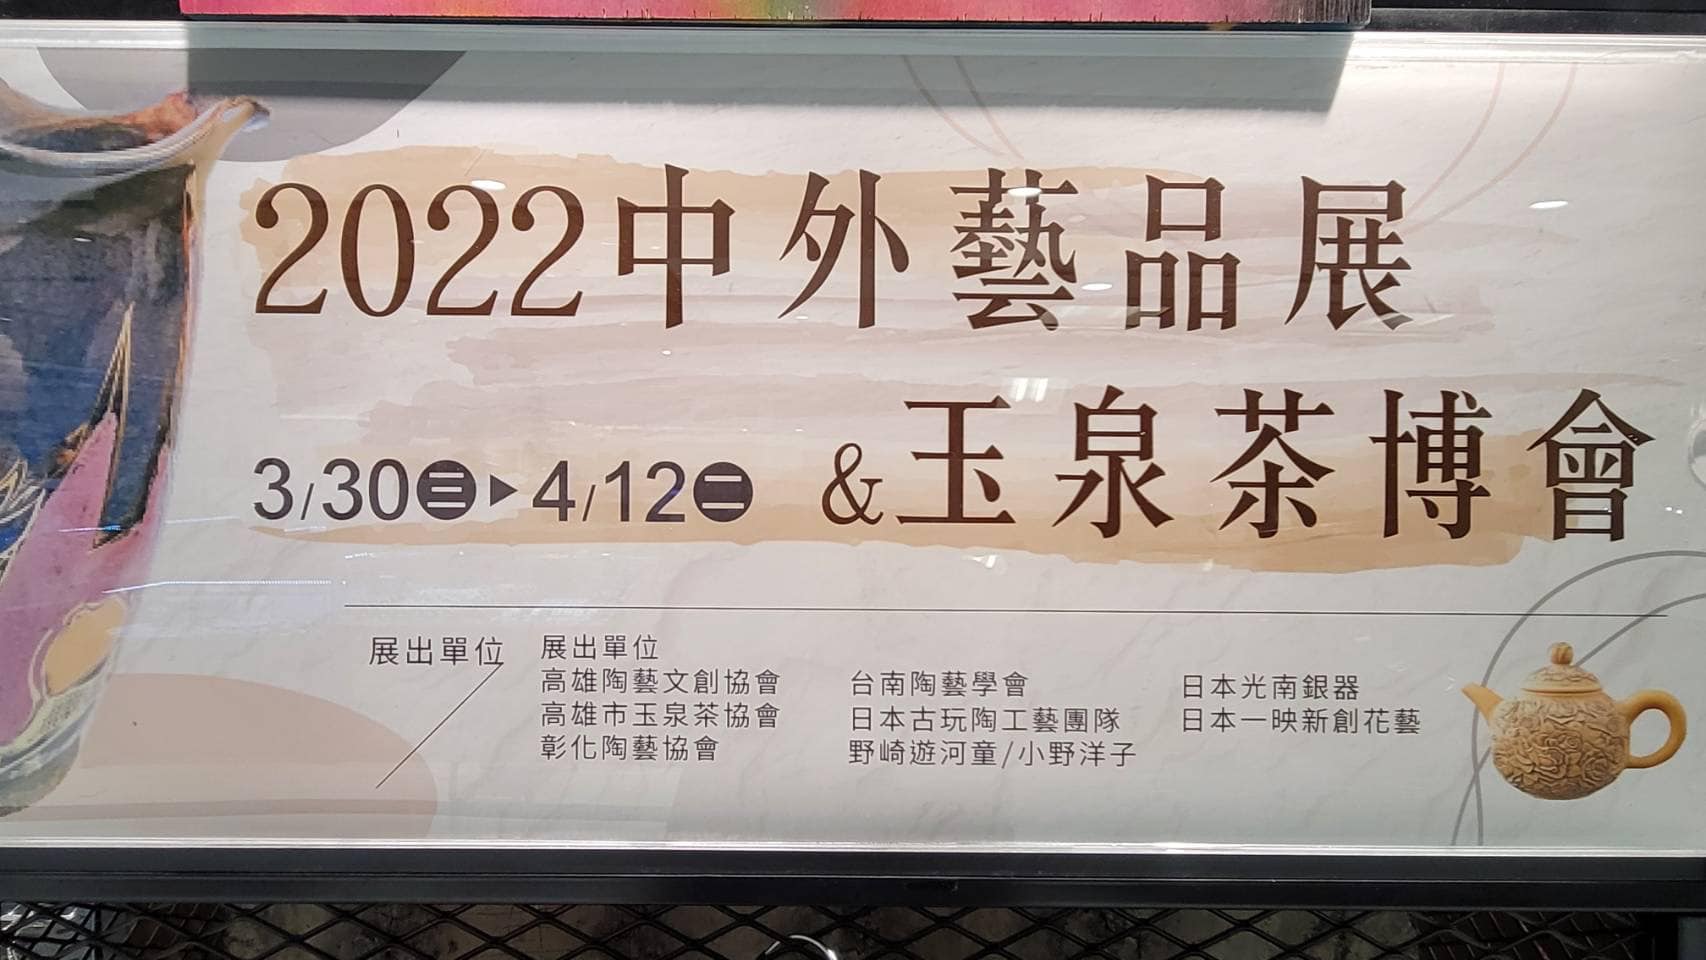 2022中外藝品展在大立3/30-4/12七樓展示場